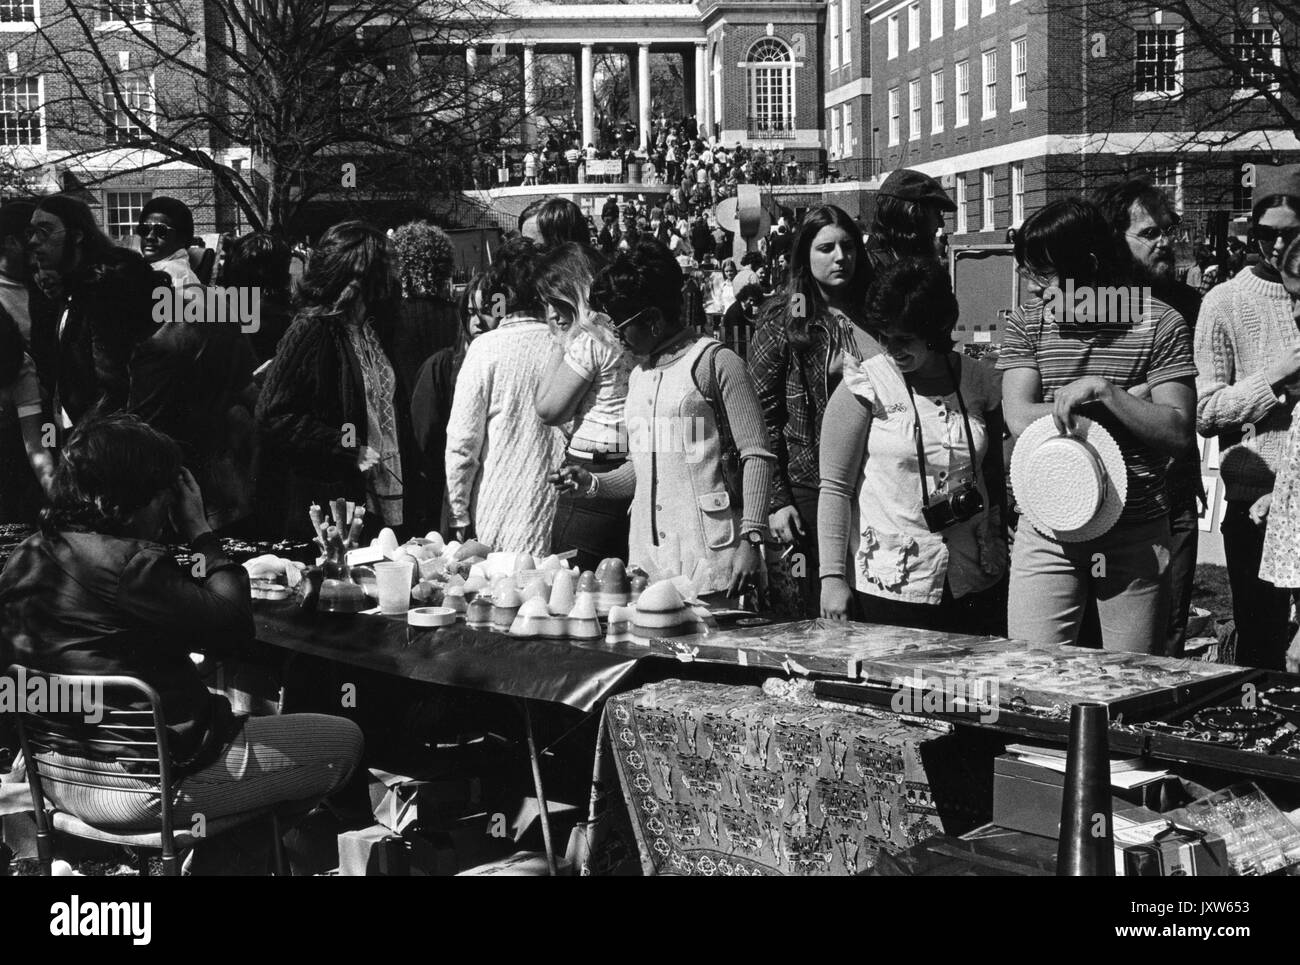 Schüler Anbieter waren an Spring Fair suchen, eine Feder, Karneval, im Freien, Anbieter Zelte und einer großen Masse im Hintergrund, an der Johns Hopkins University, 1972. Stockfoto